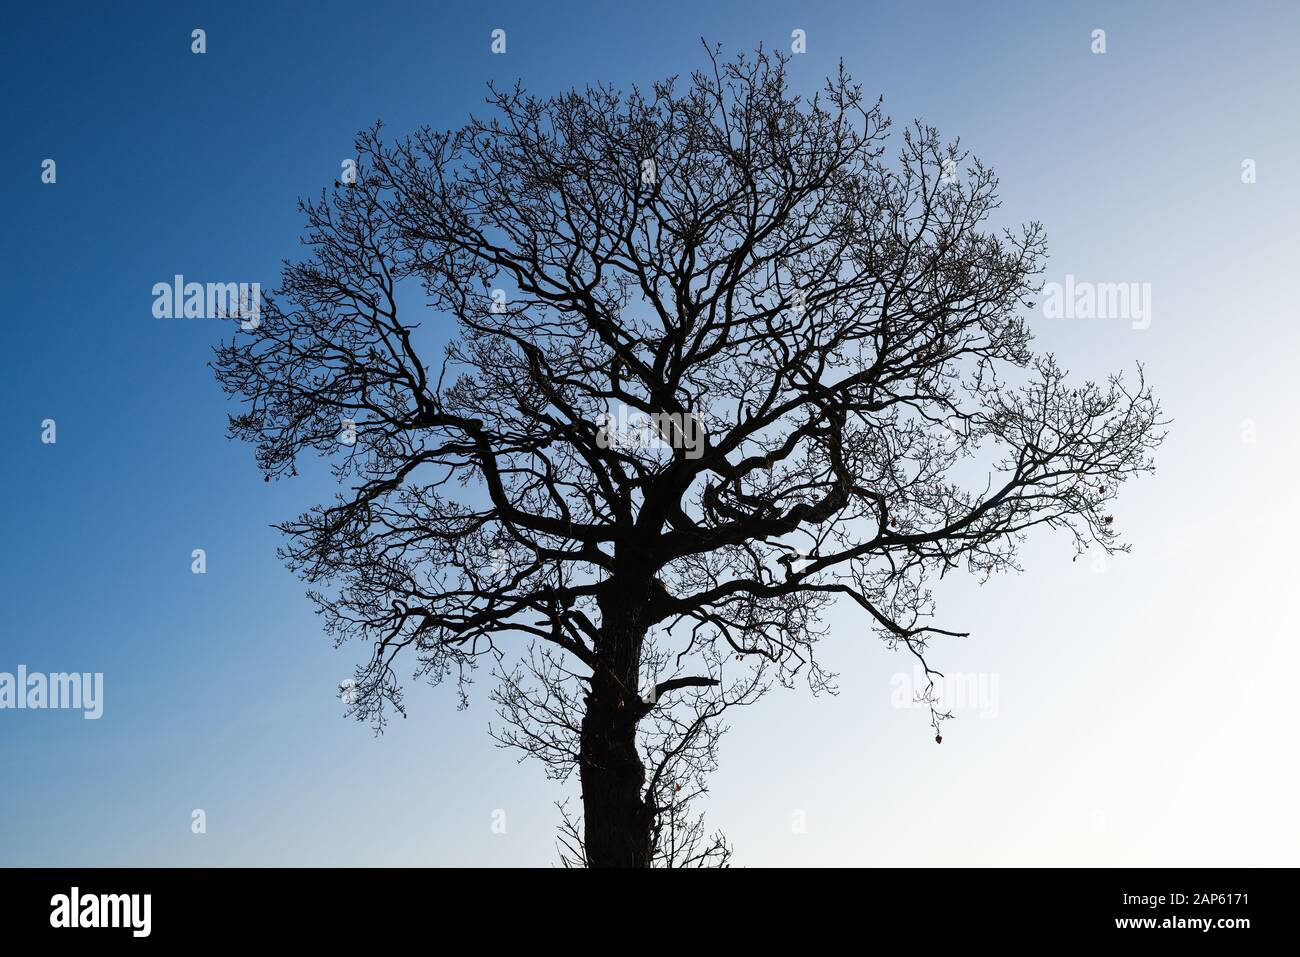 Oak Tree in Winter Against a Blue Sky. Stock Photo